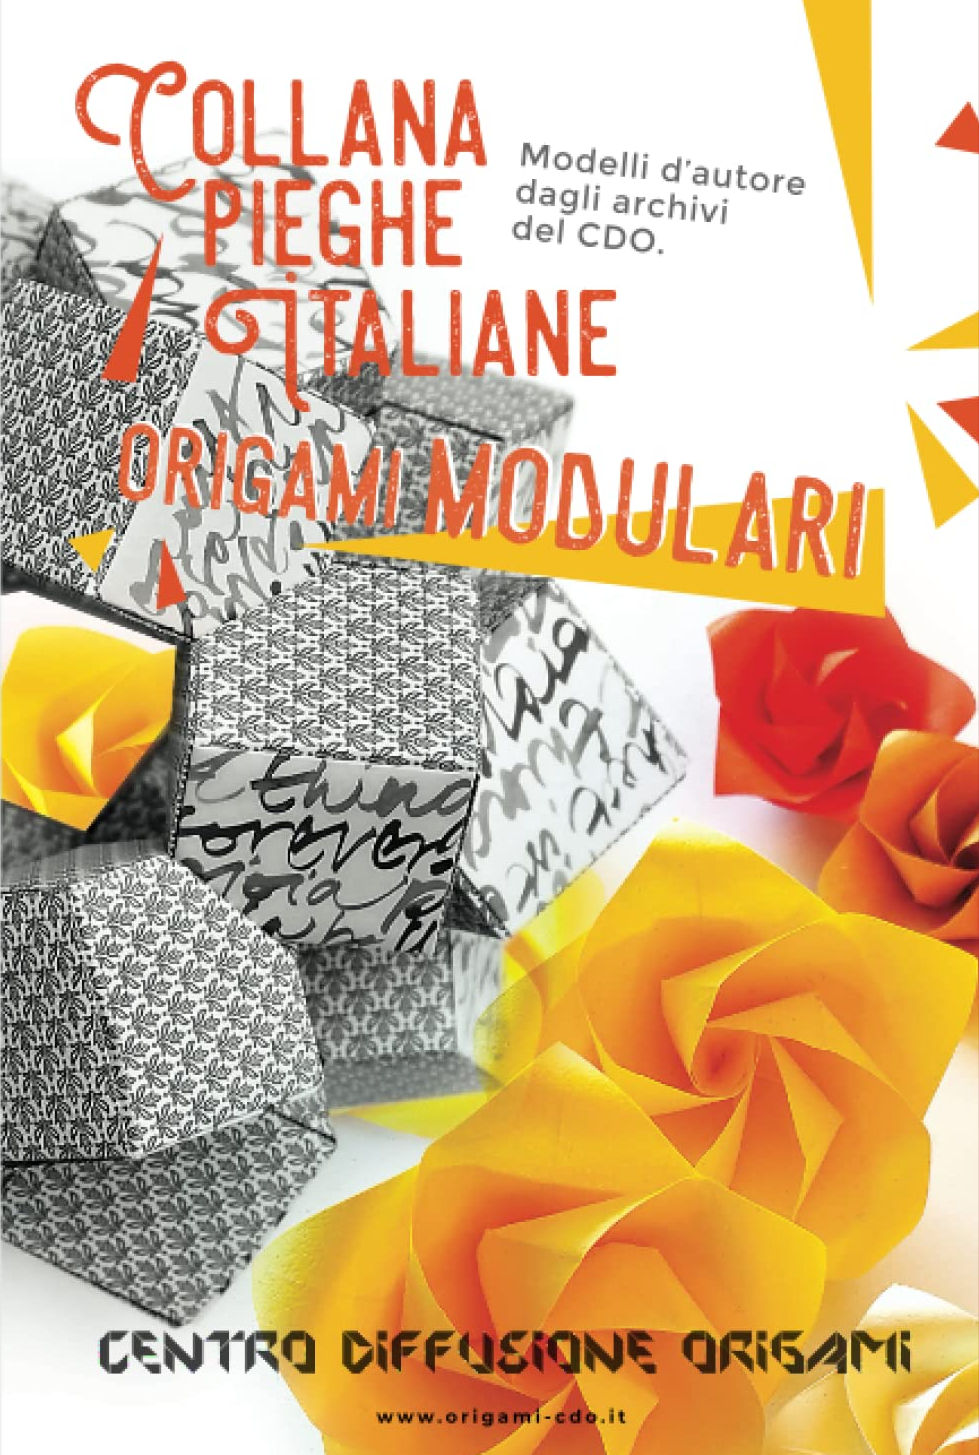 Collana pieghe Italiane - origami MODULARI : page 64.